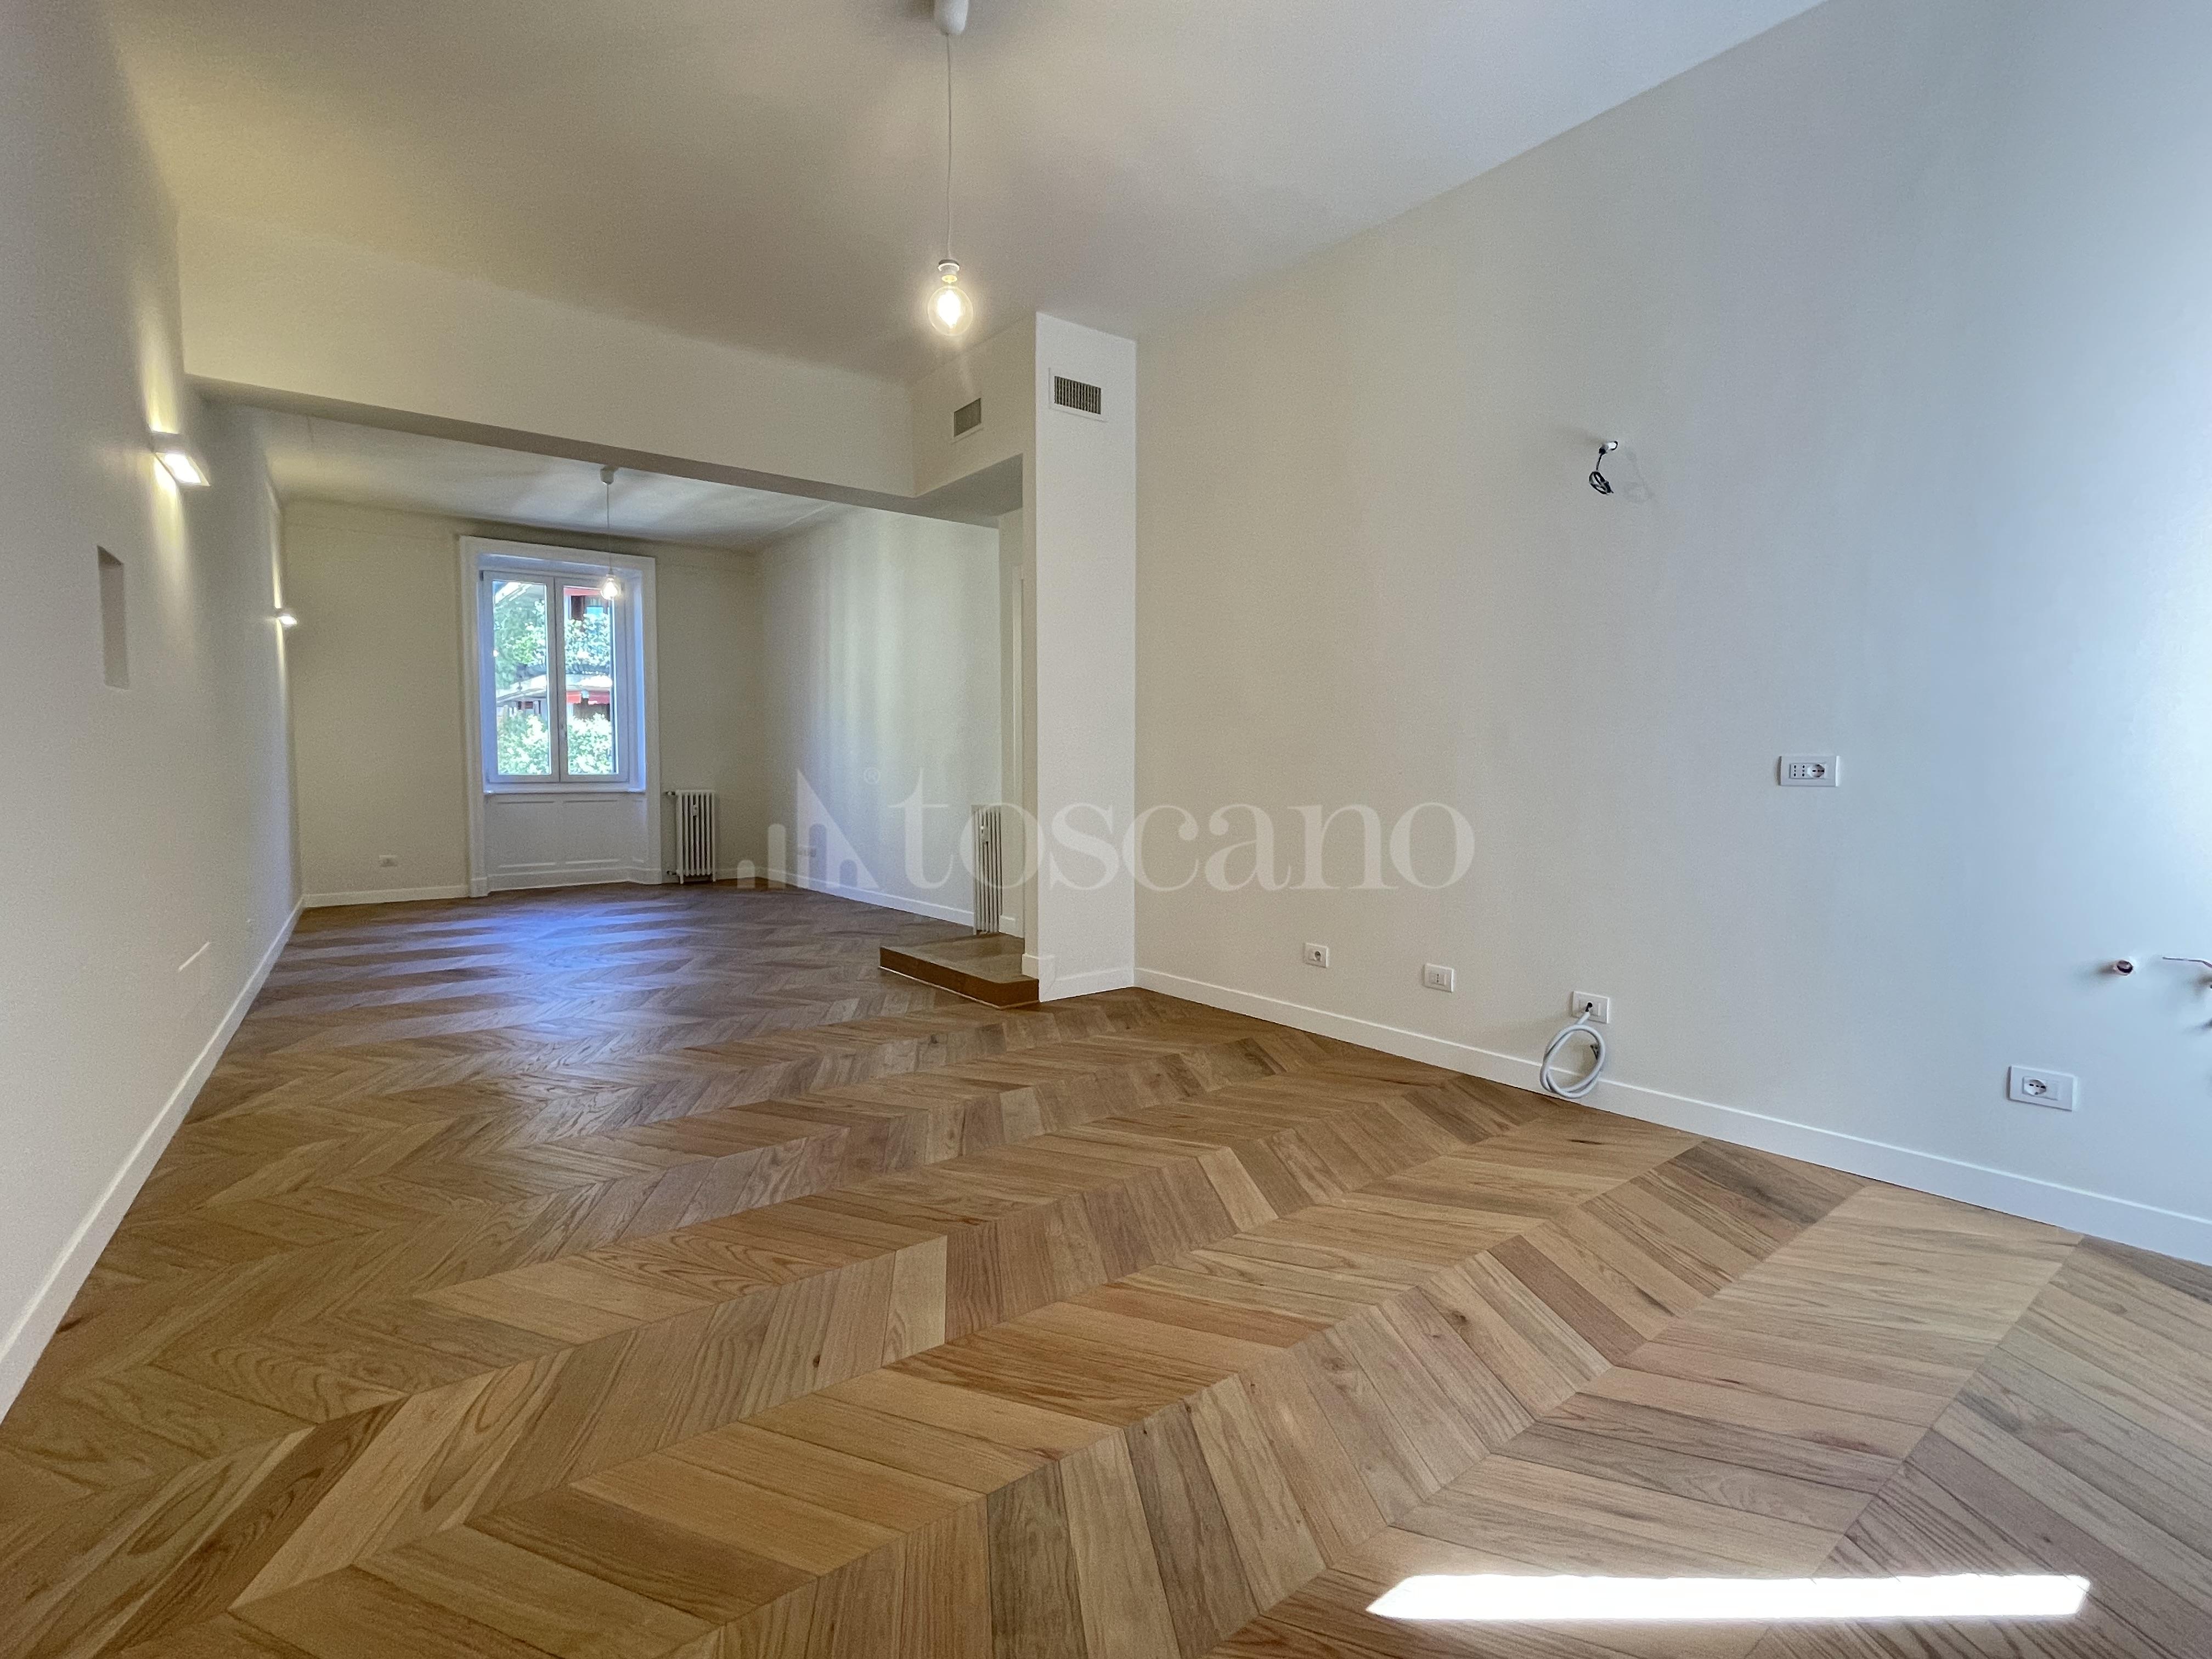 Casa a Milano in Via Carlo Crivelli, 14, Crivelli